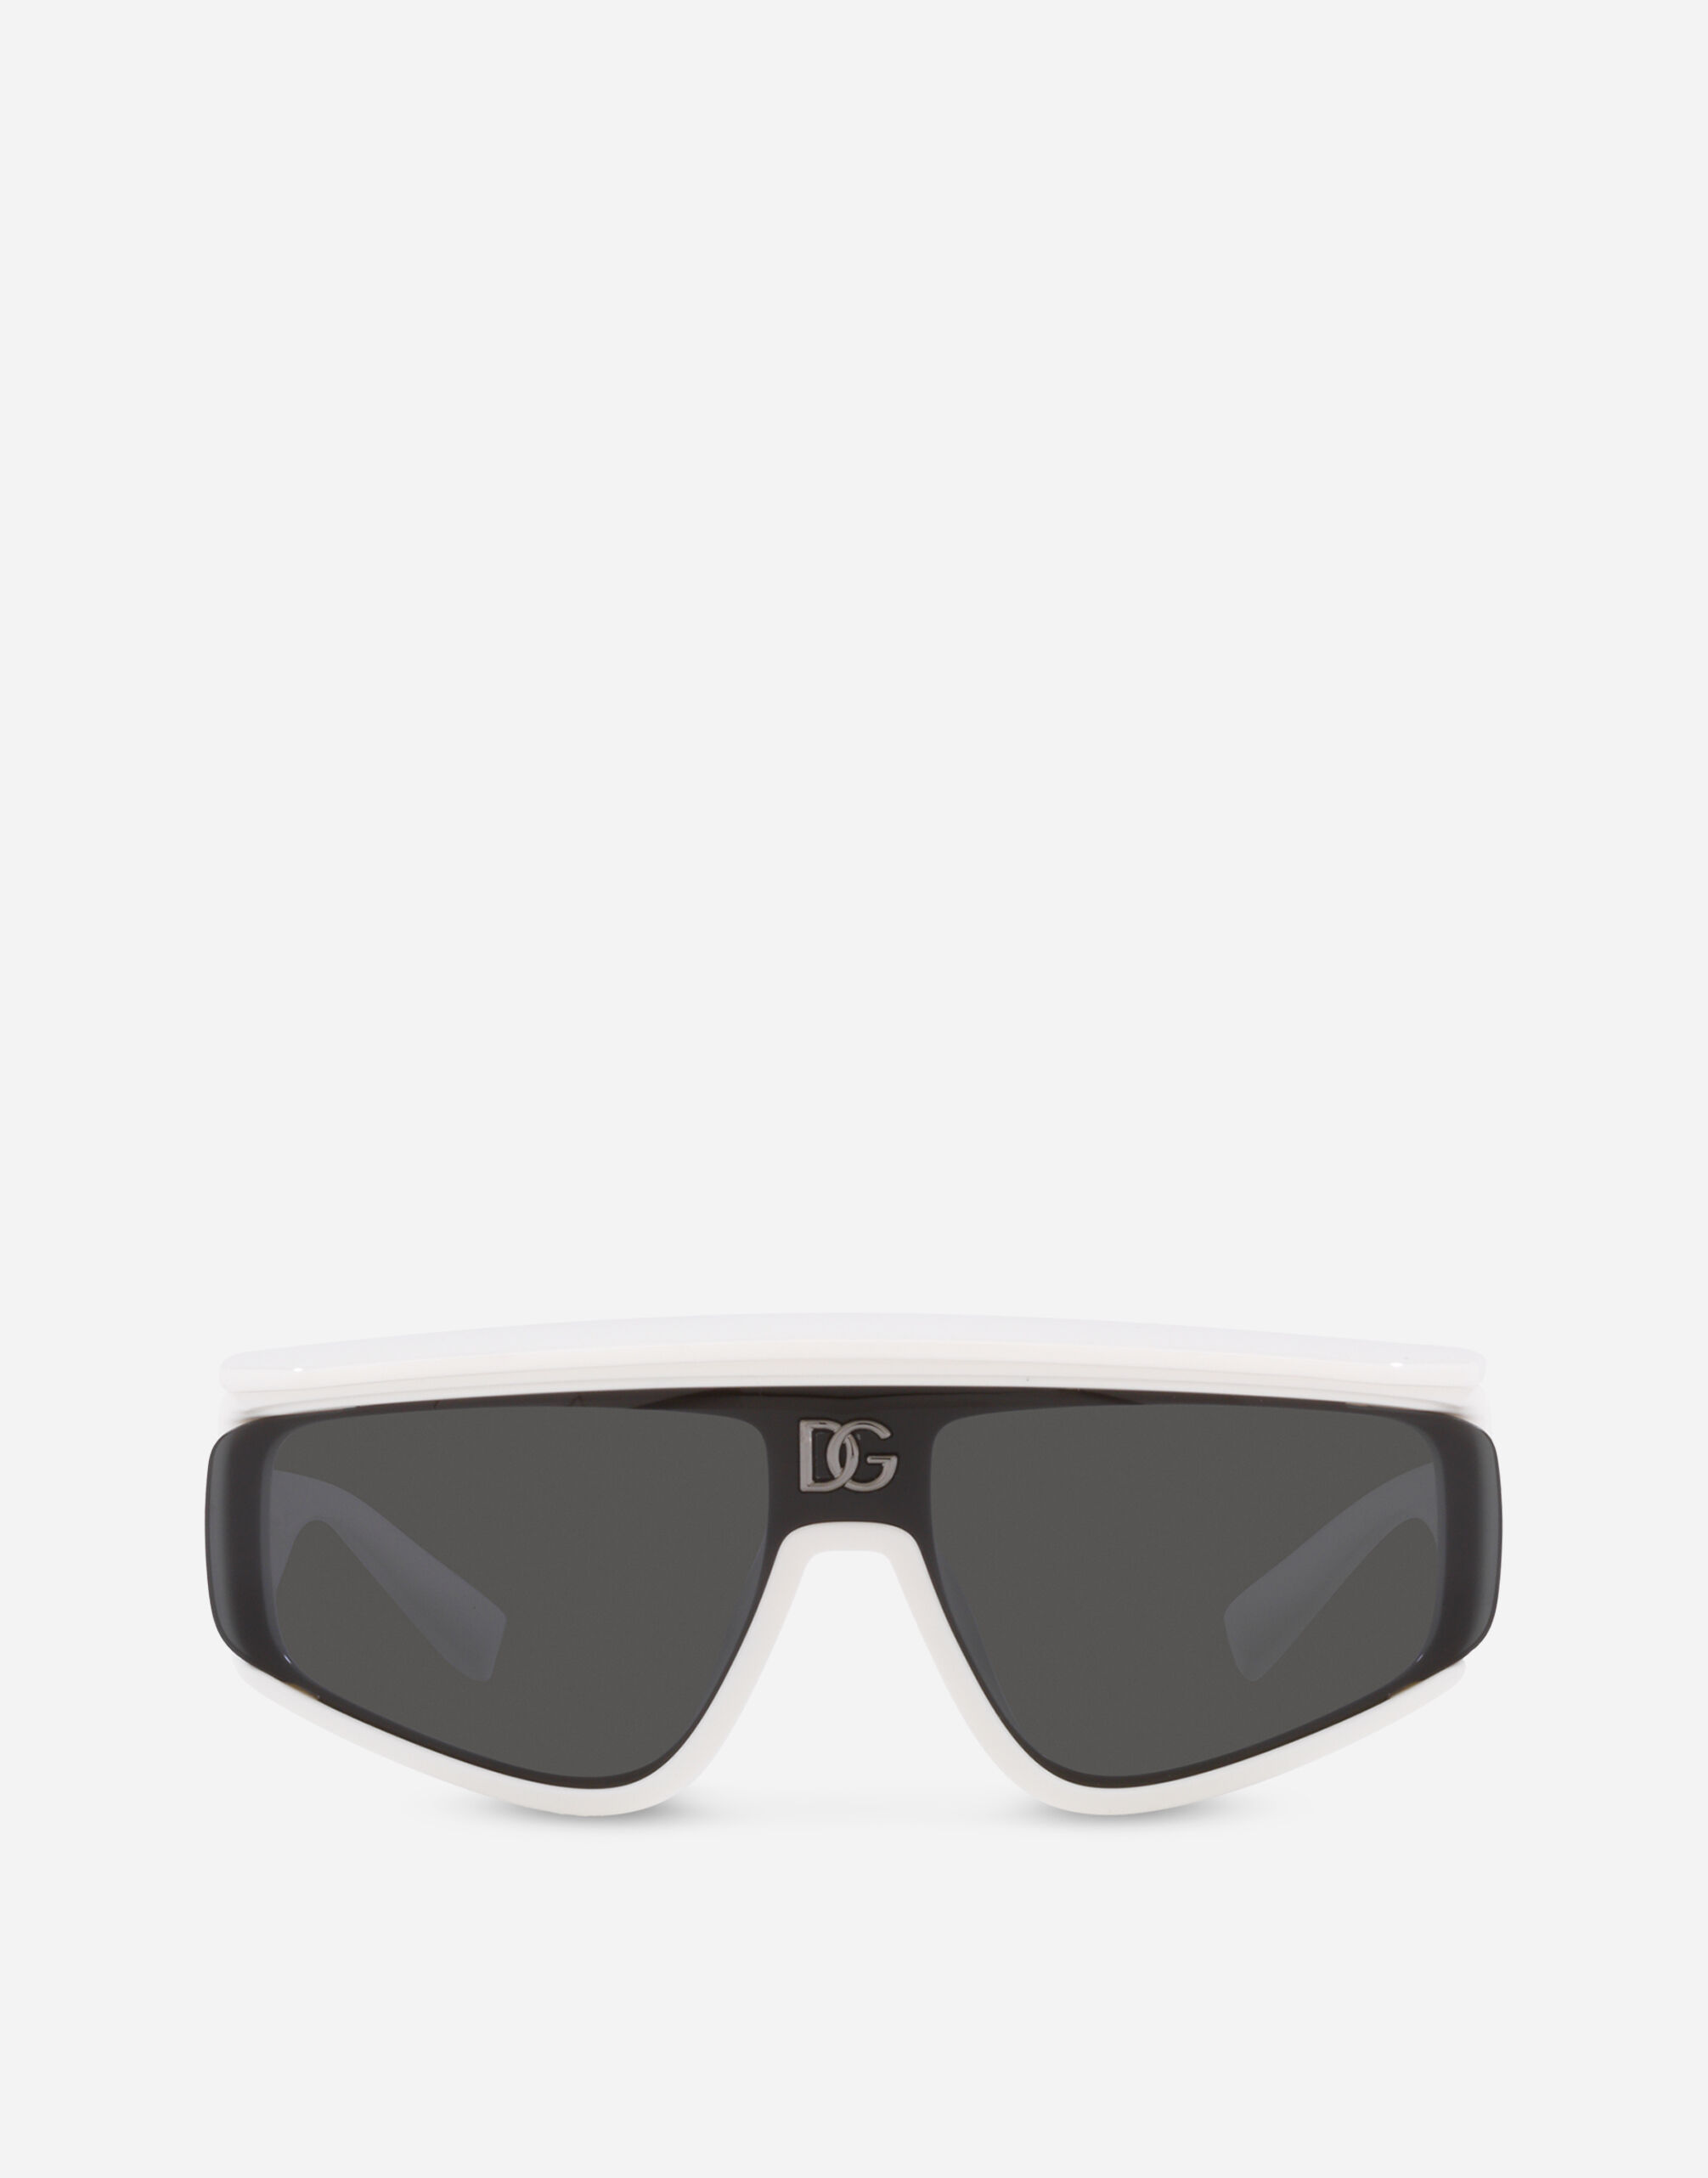 Dolce & Gabbana DG crossed sunglasses Black VG442AVP181